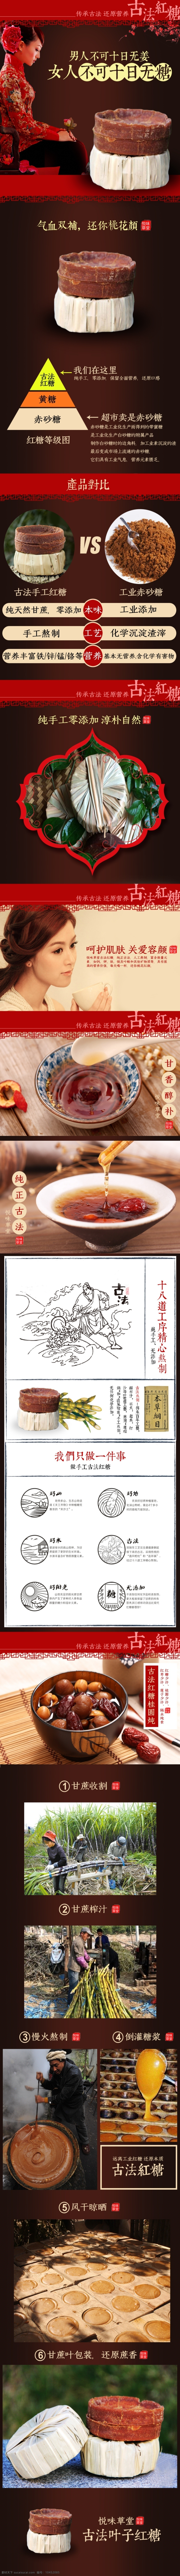 古法 红糖 描述 淘宝 详情 页 古法红糖 古方红糖 叶子红糖 糖 传统中式 中国风